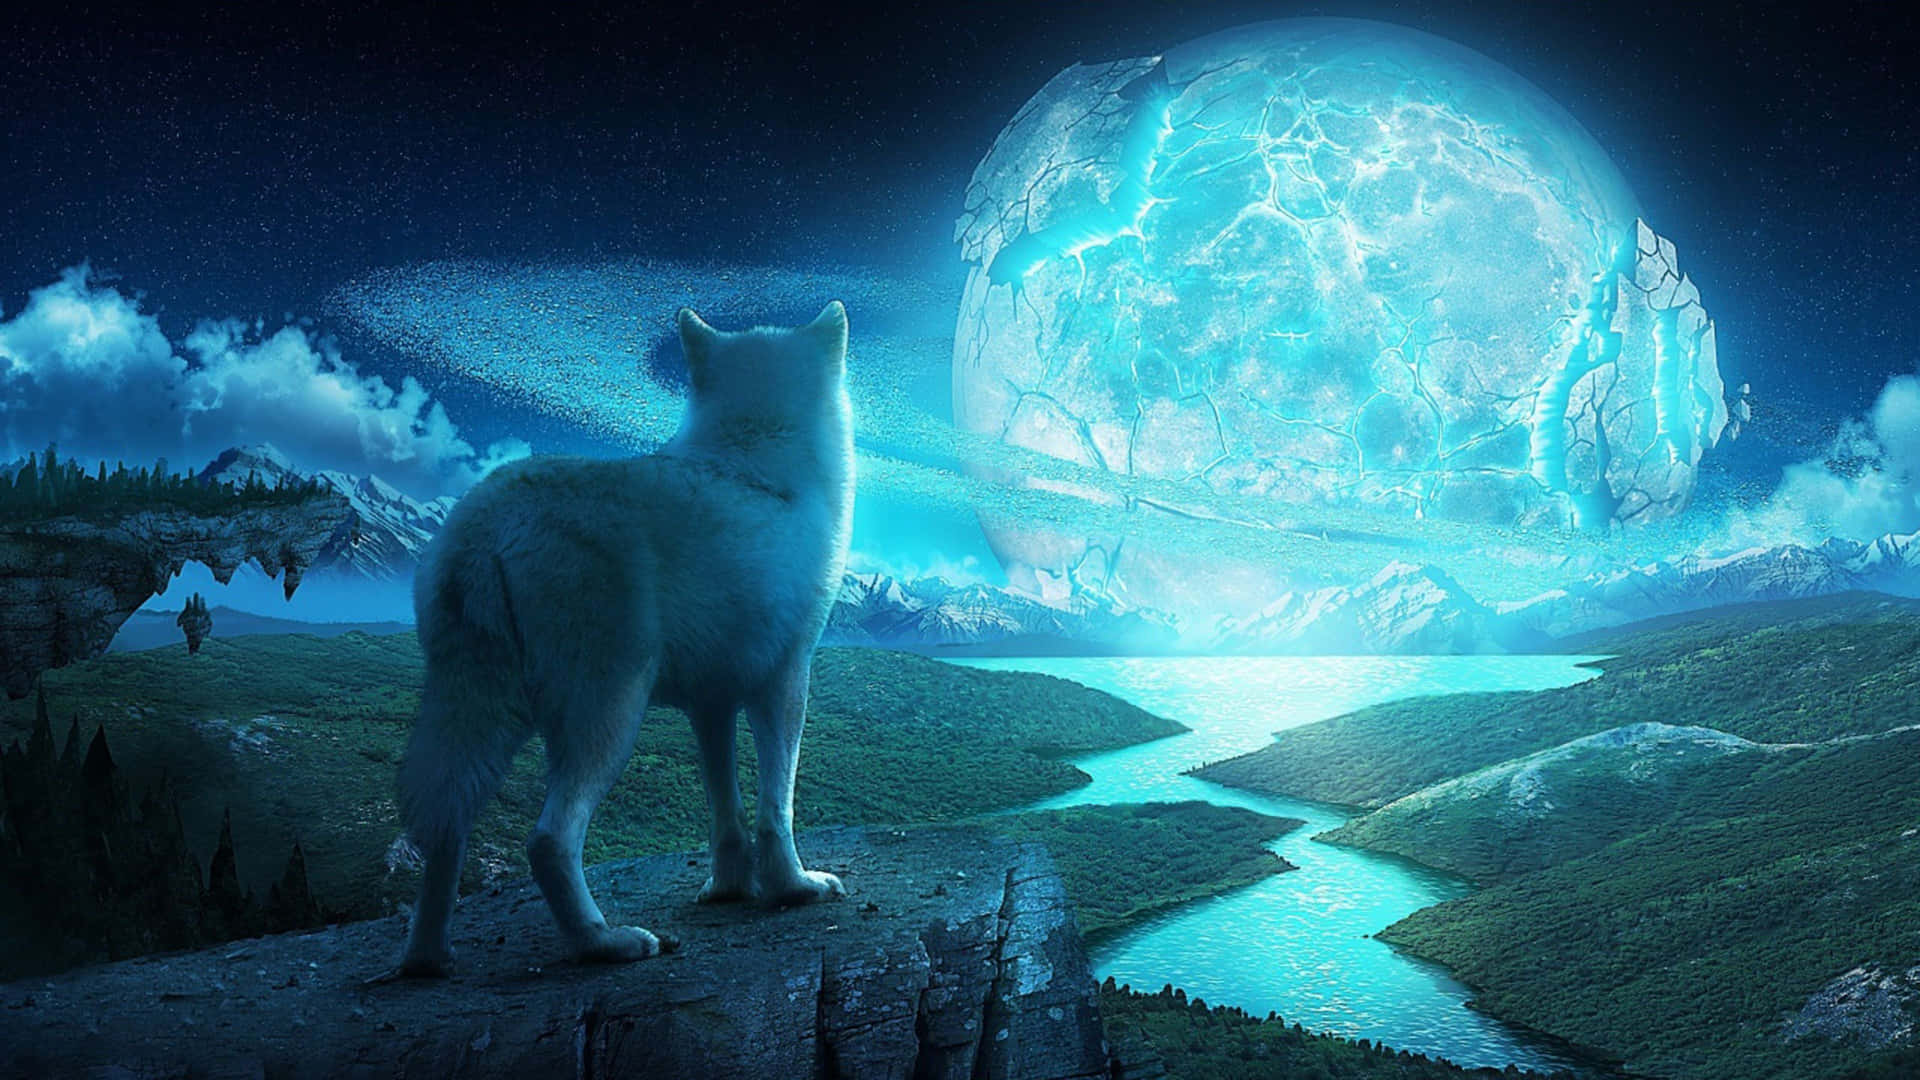 Einwolf Steht Auf Einem Felsen Und Schaut Den Mond An. Wallpaper